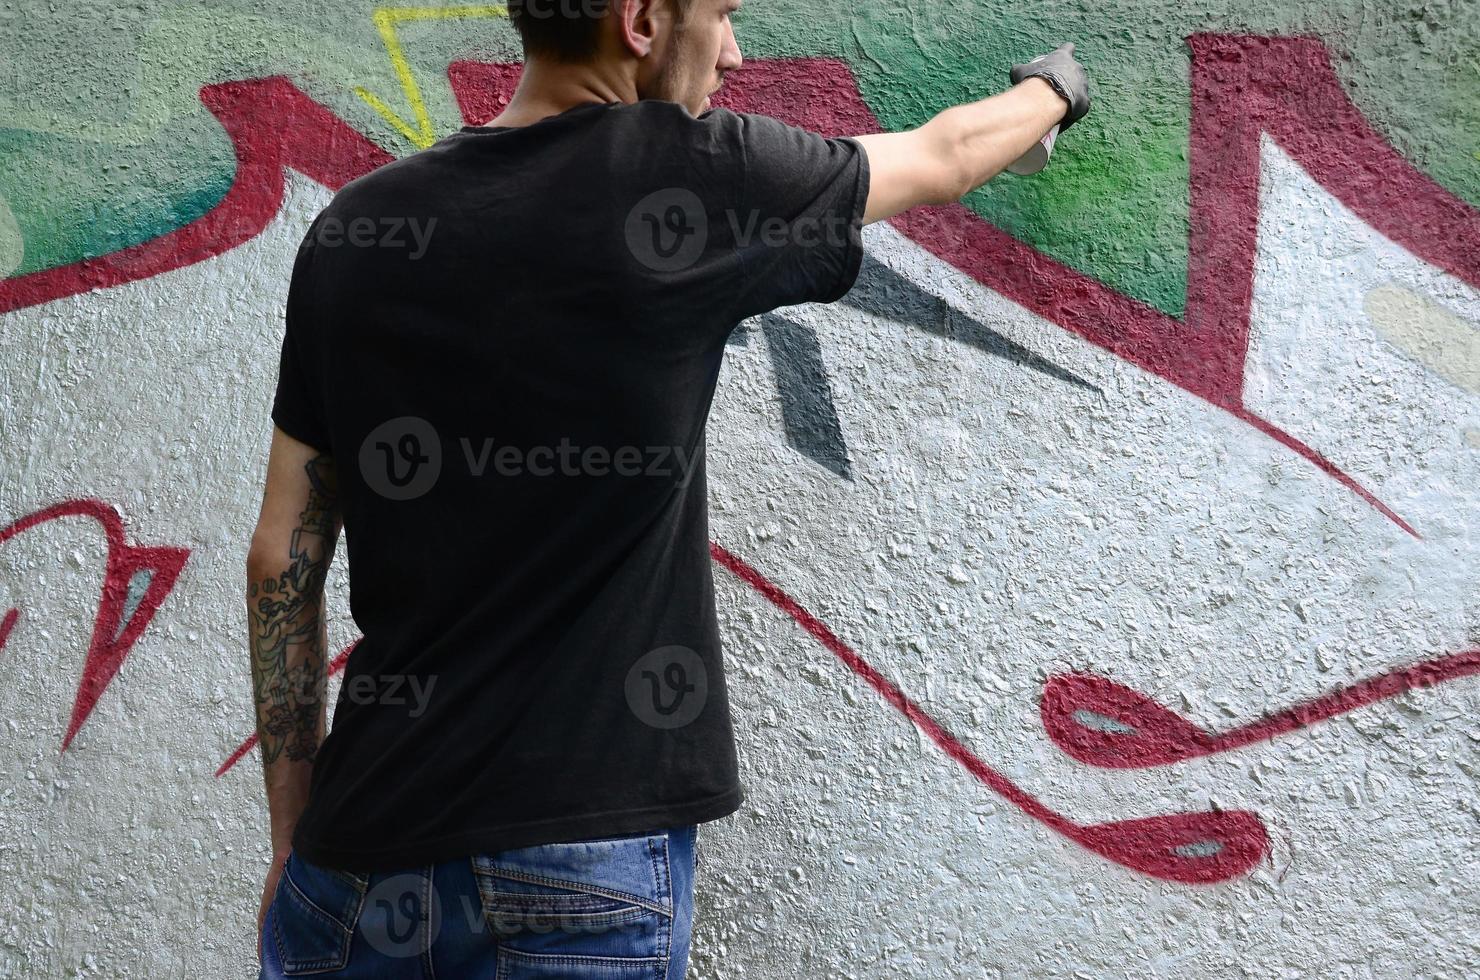 Ein junger Hooligan malt Graffiti auf eine Betonwand. illegales vandalismuskonzept. Straßenkunst foto